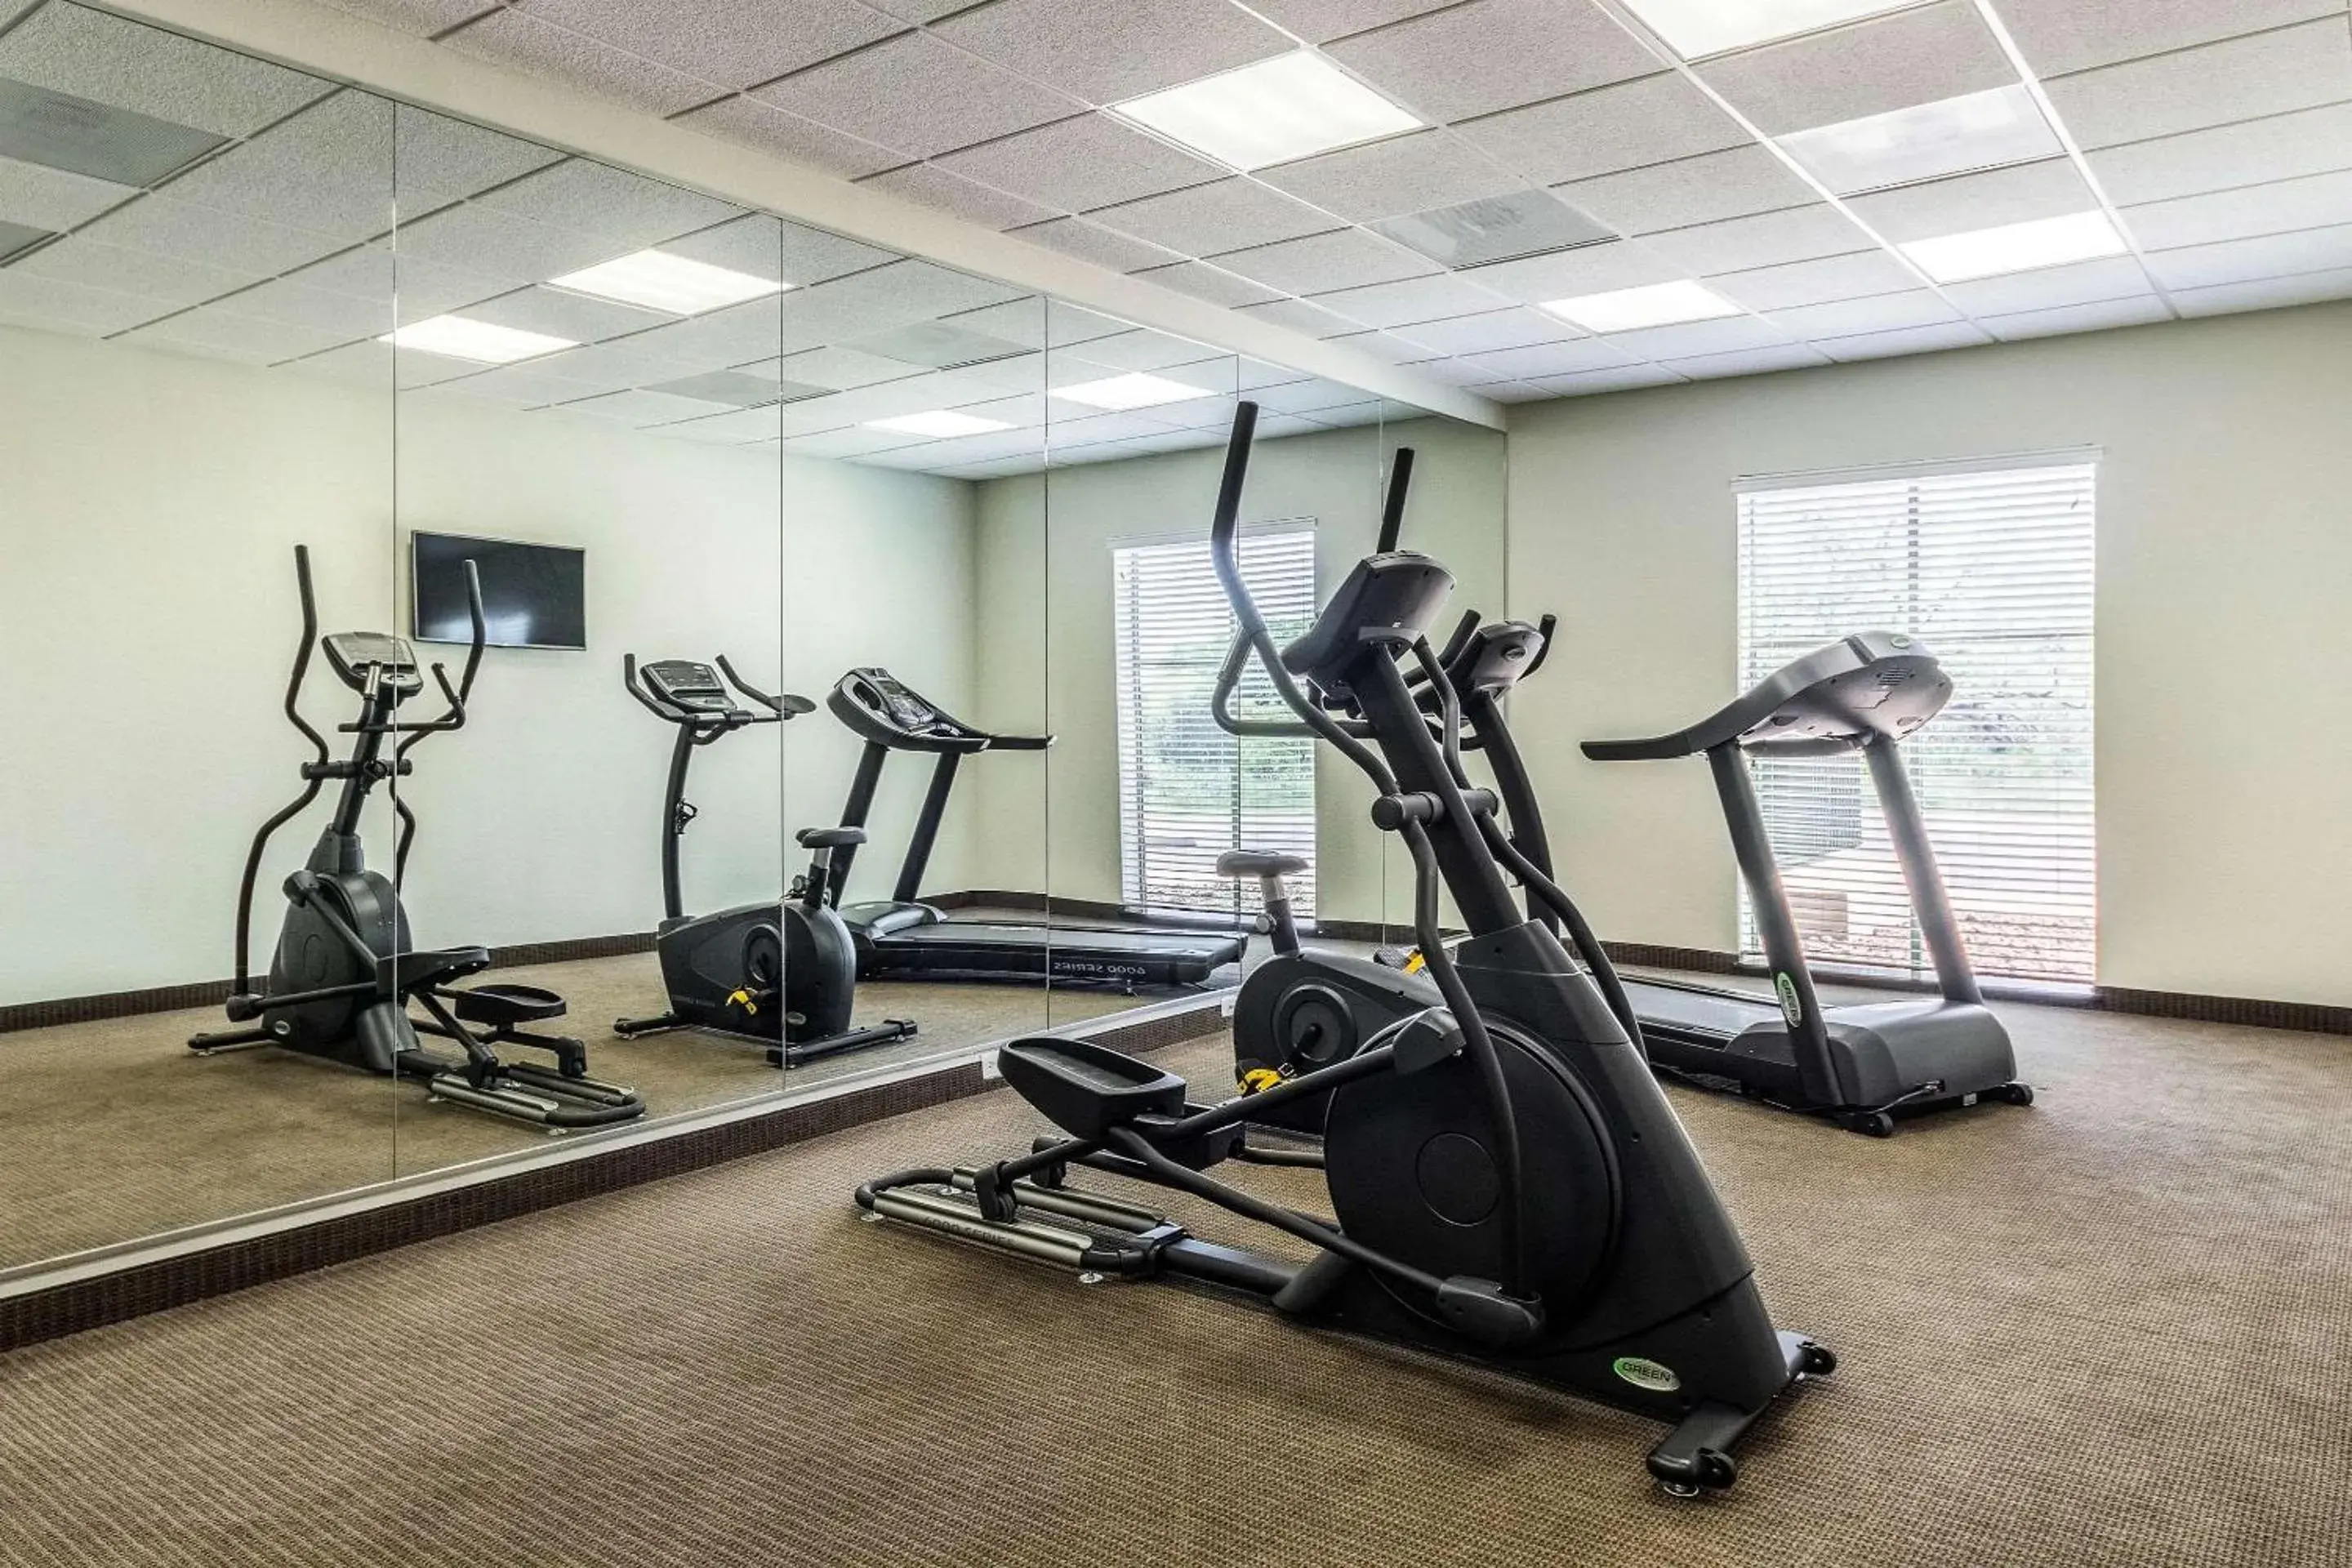 Fitness centre/facilities, Fitness Center/Facilities in Sleep Inn & Suites Jourdanton - Pleasanton